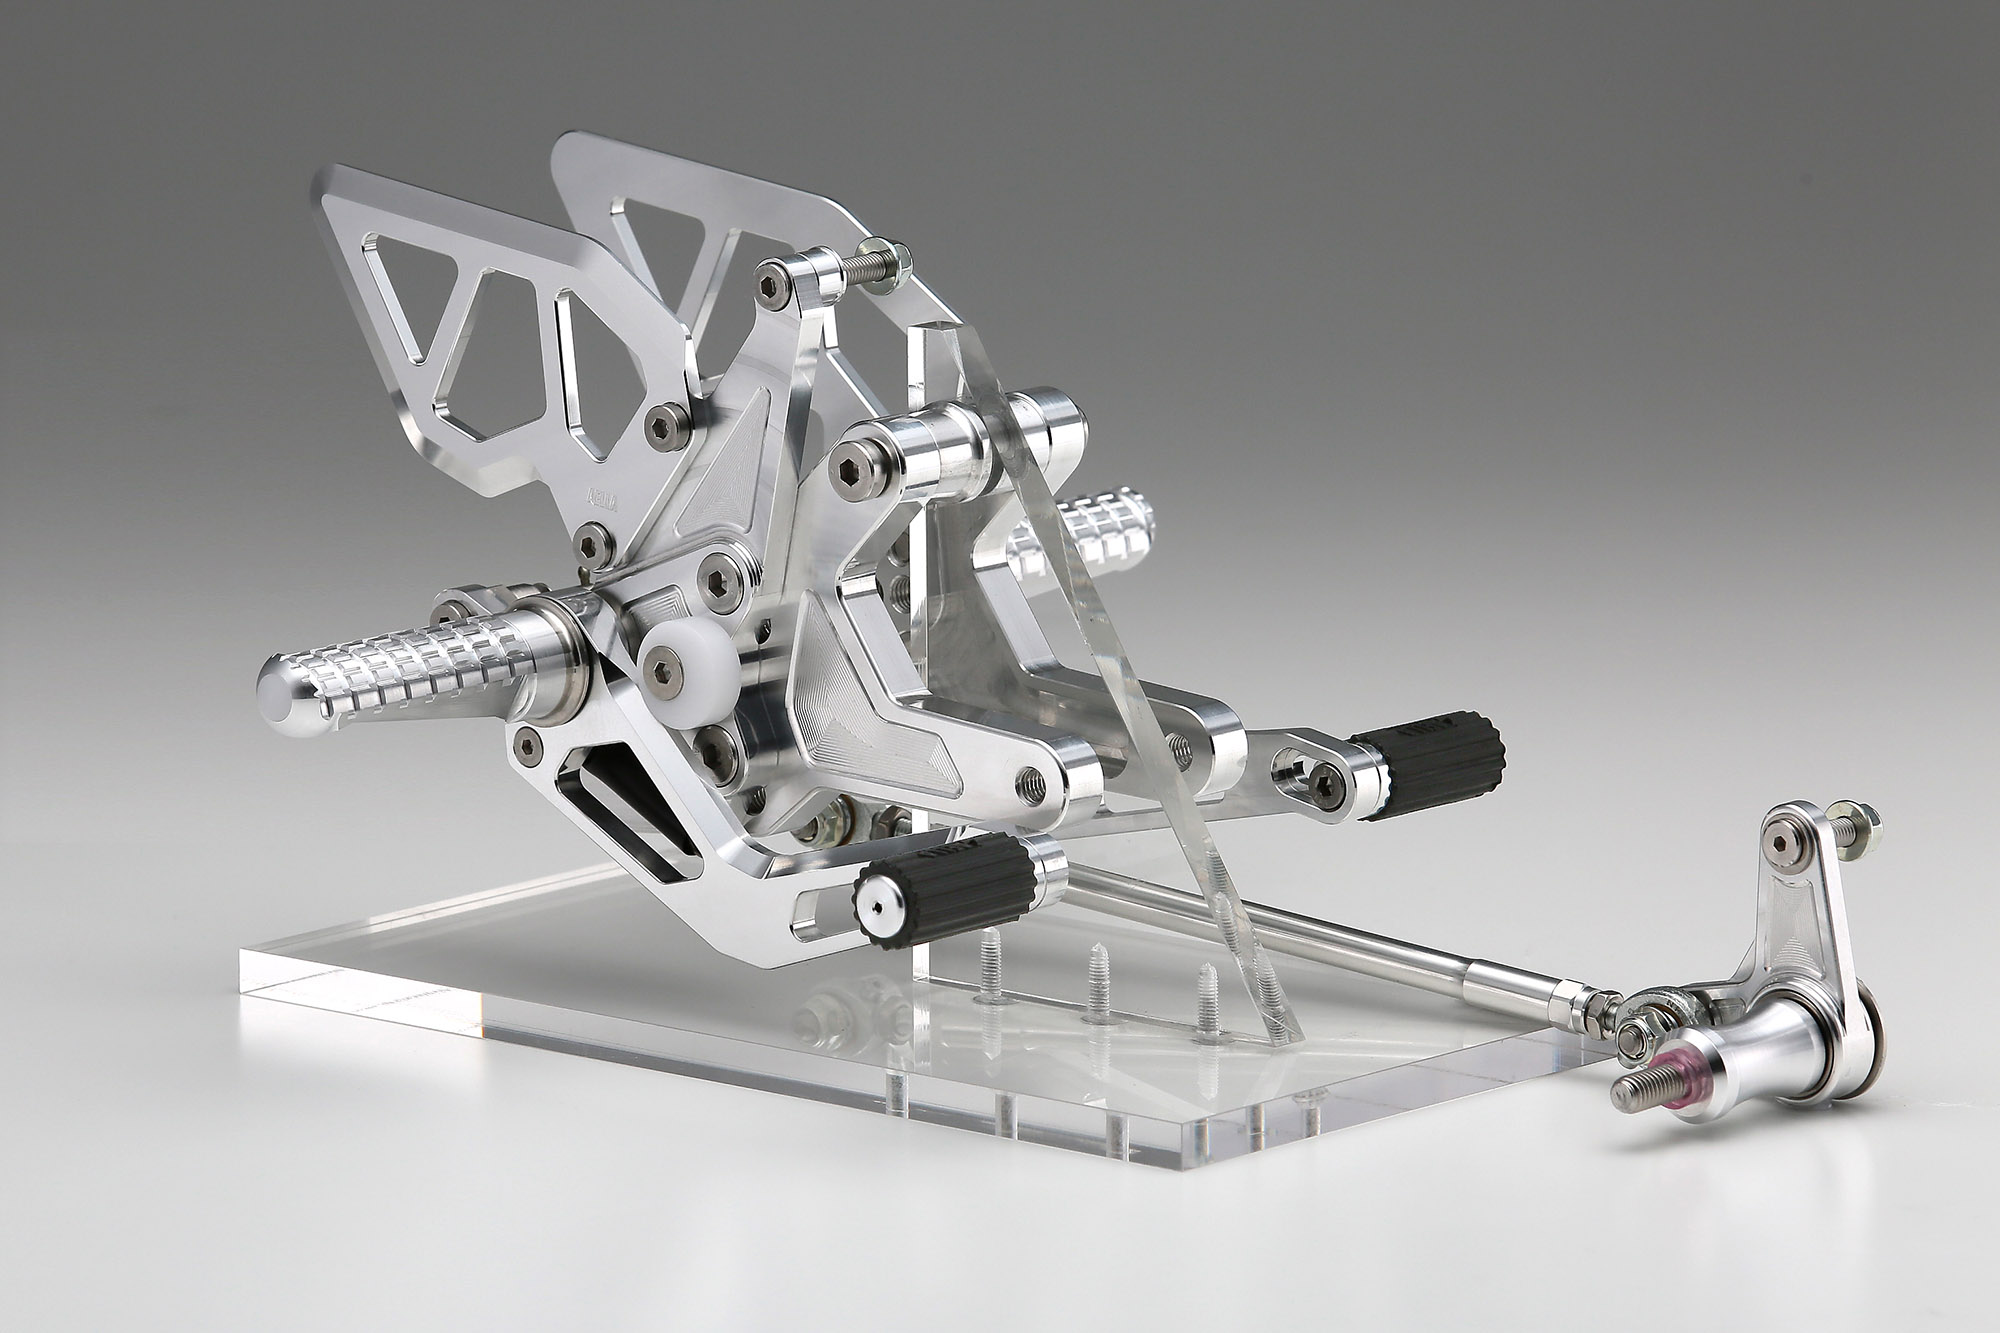 トップブリッジ MotoGPデザイン（BMW S1000RR） | AELLA オンライン